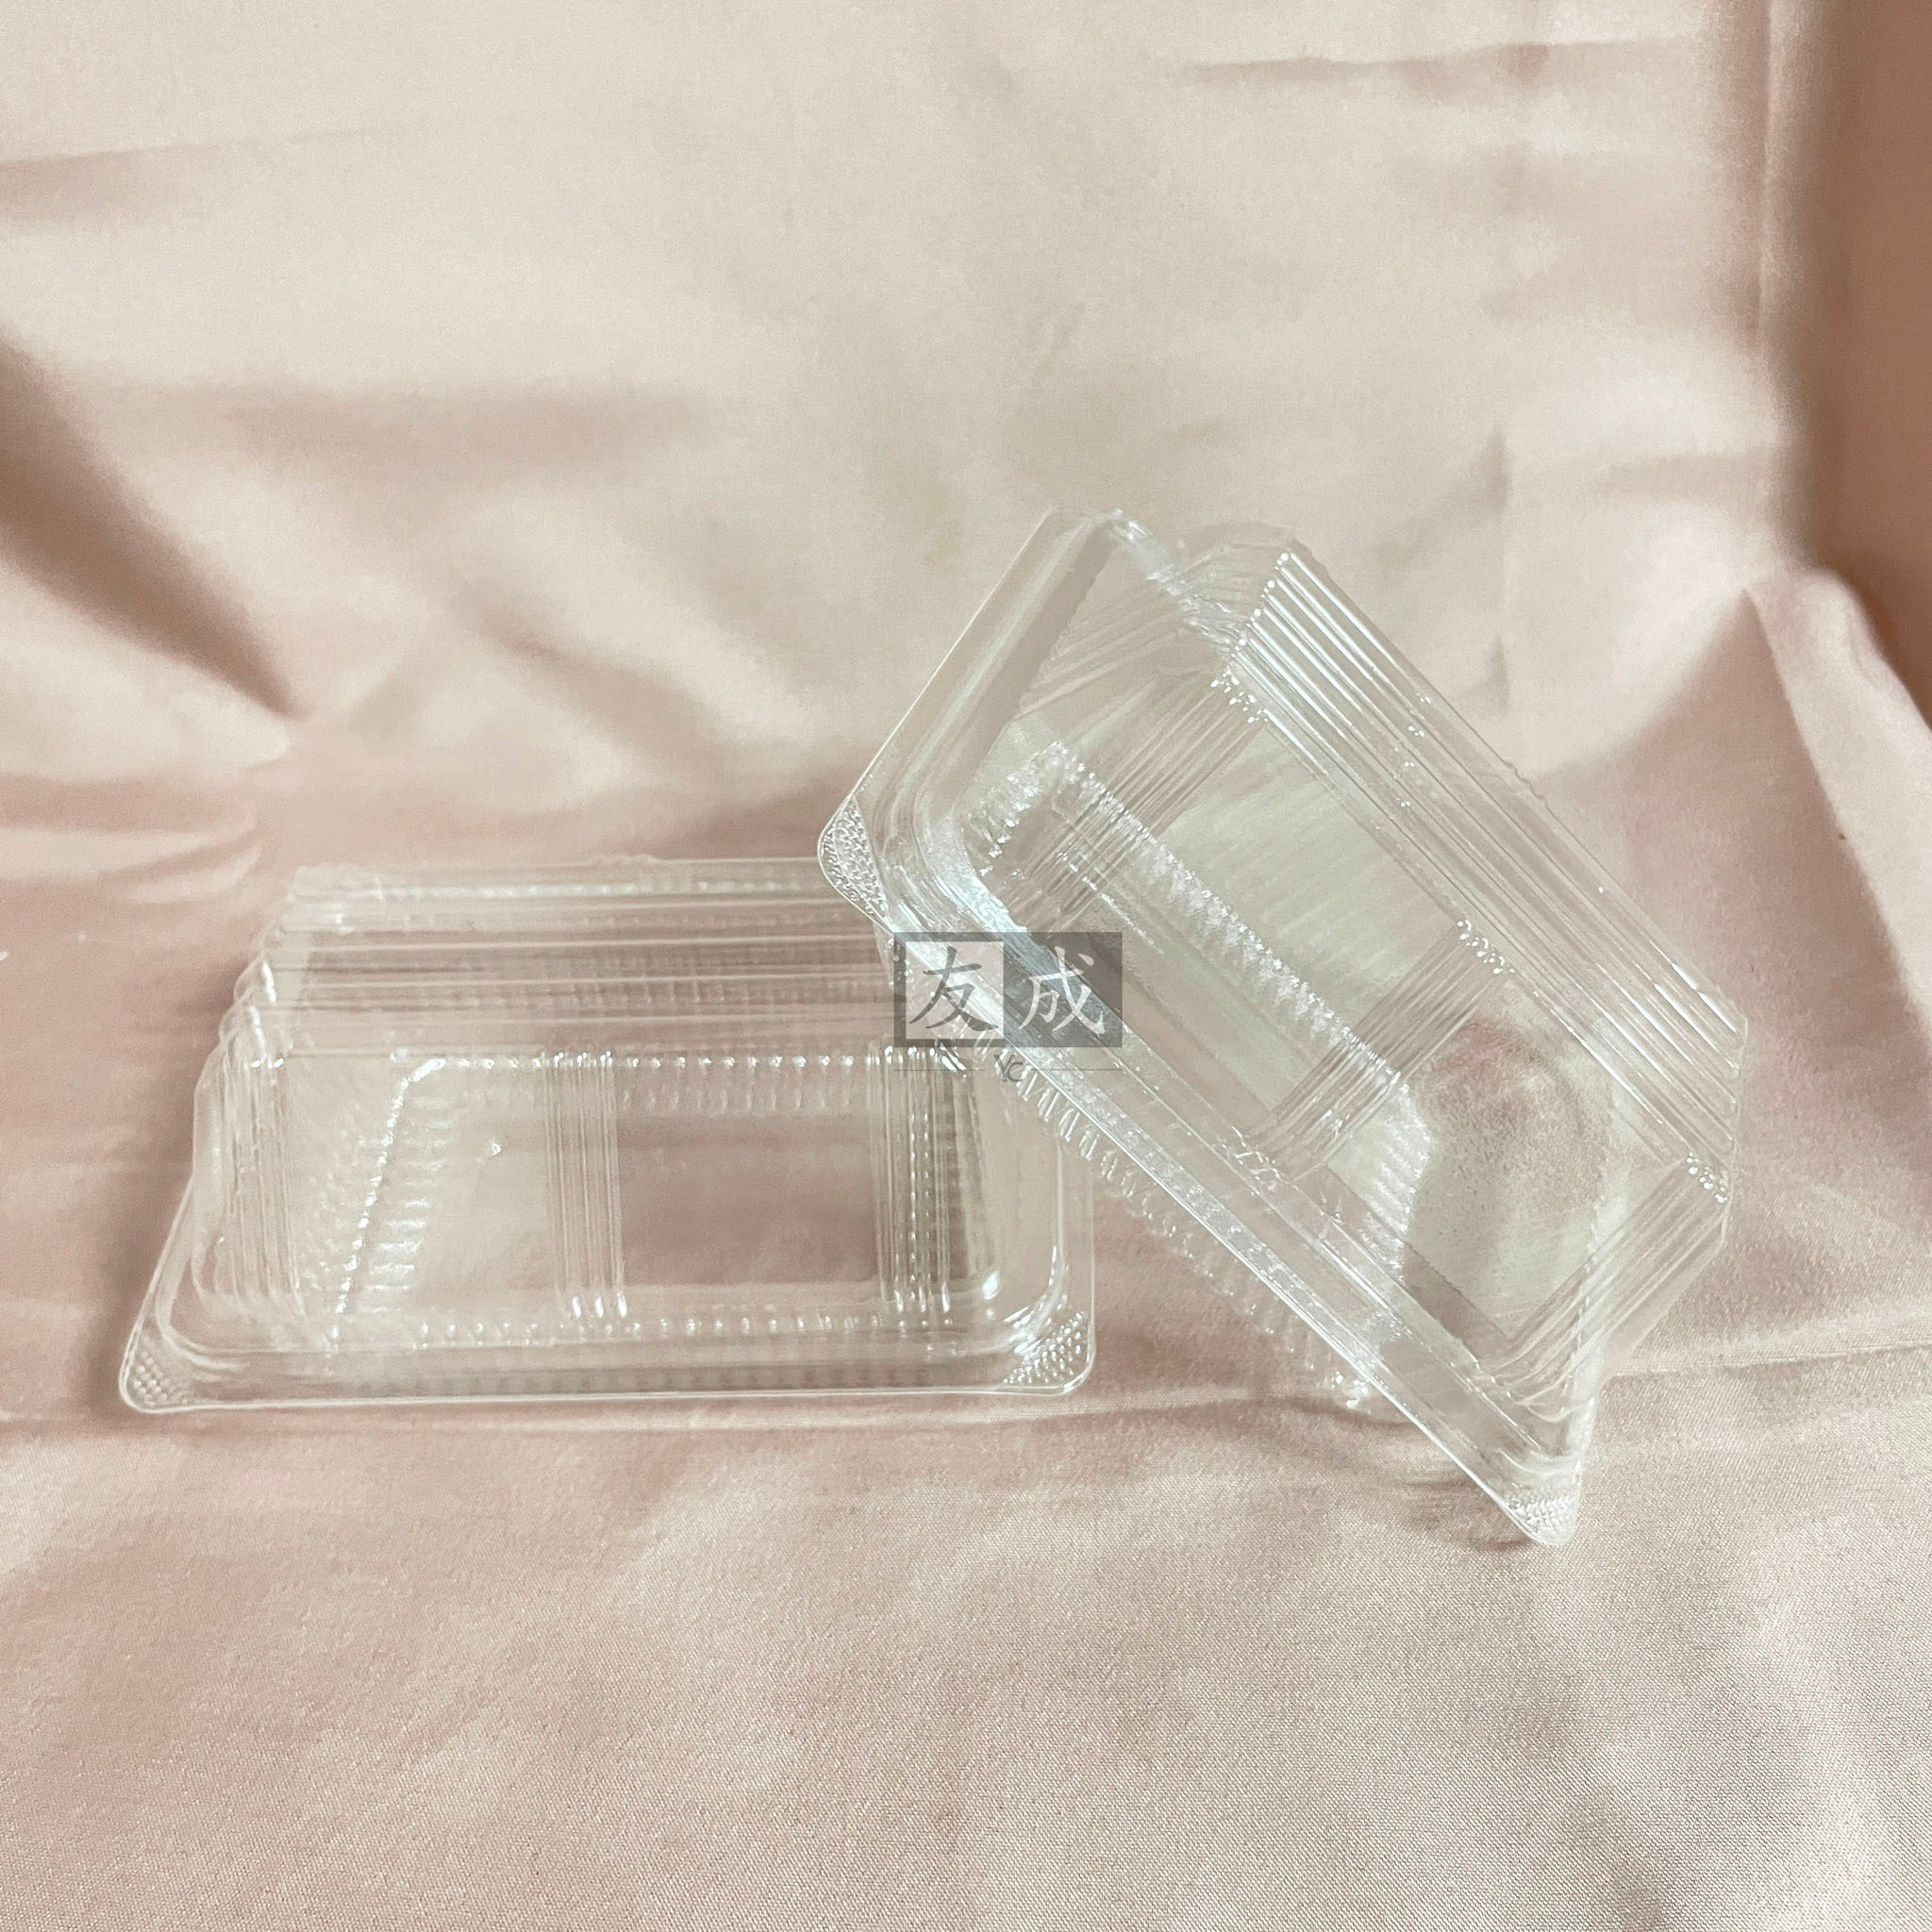 【友成包裝】透明小山形盒 100個/包 蛋糕盒 二入桂圓蛋糕盒 潛艇堡盒 熱狗堡盒 透明盒 塑膠盒 透明盒